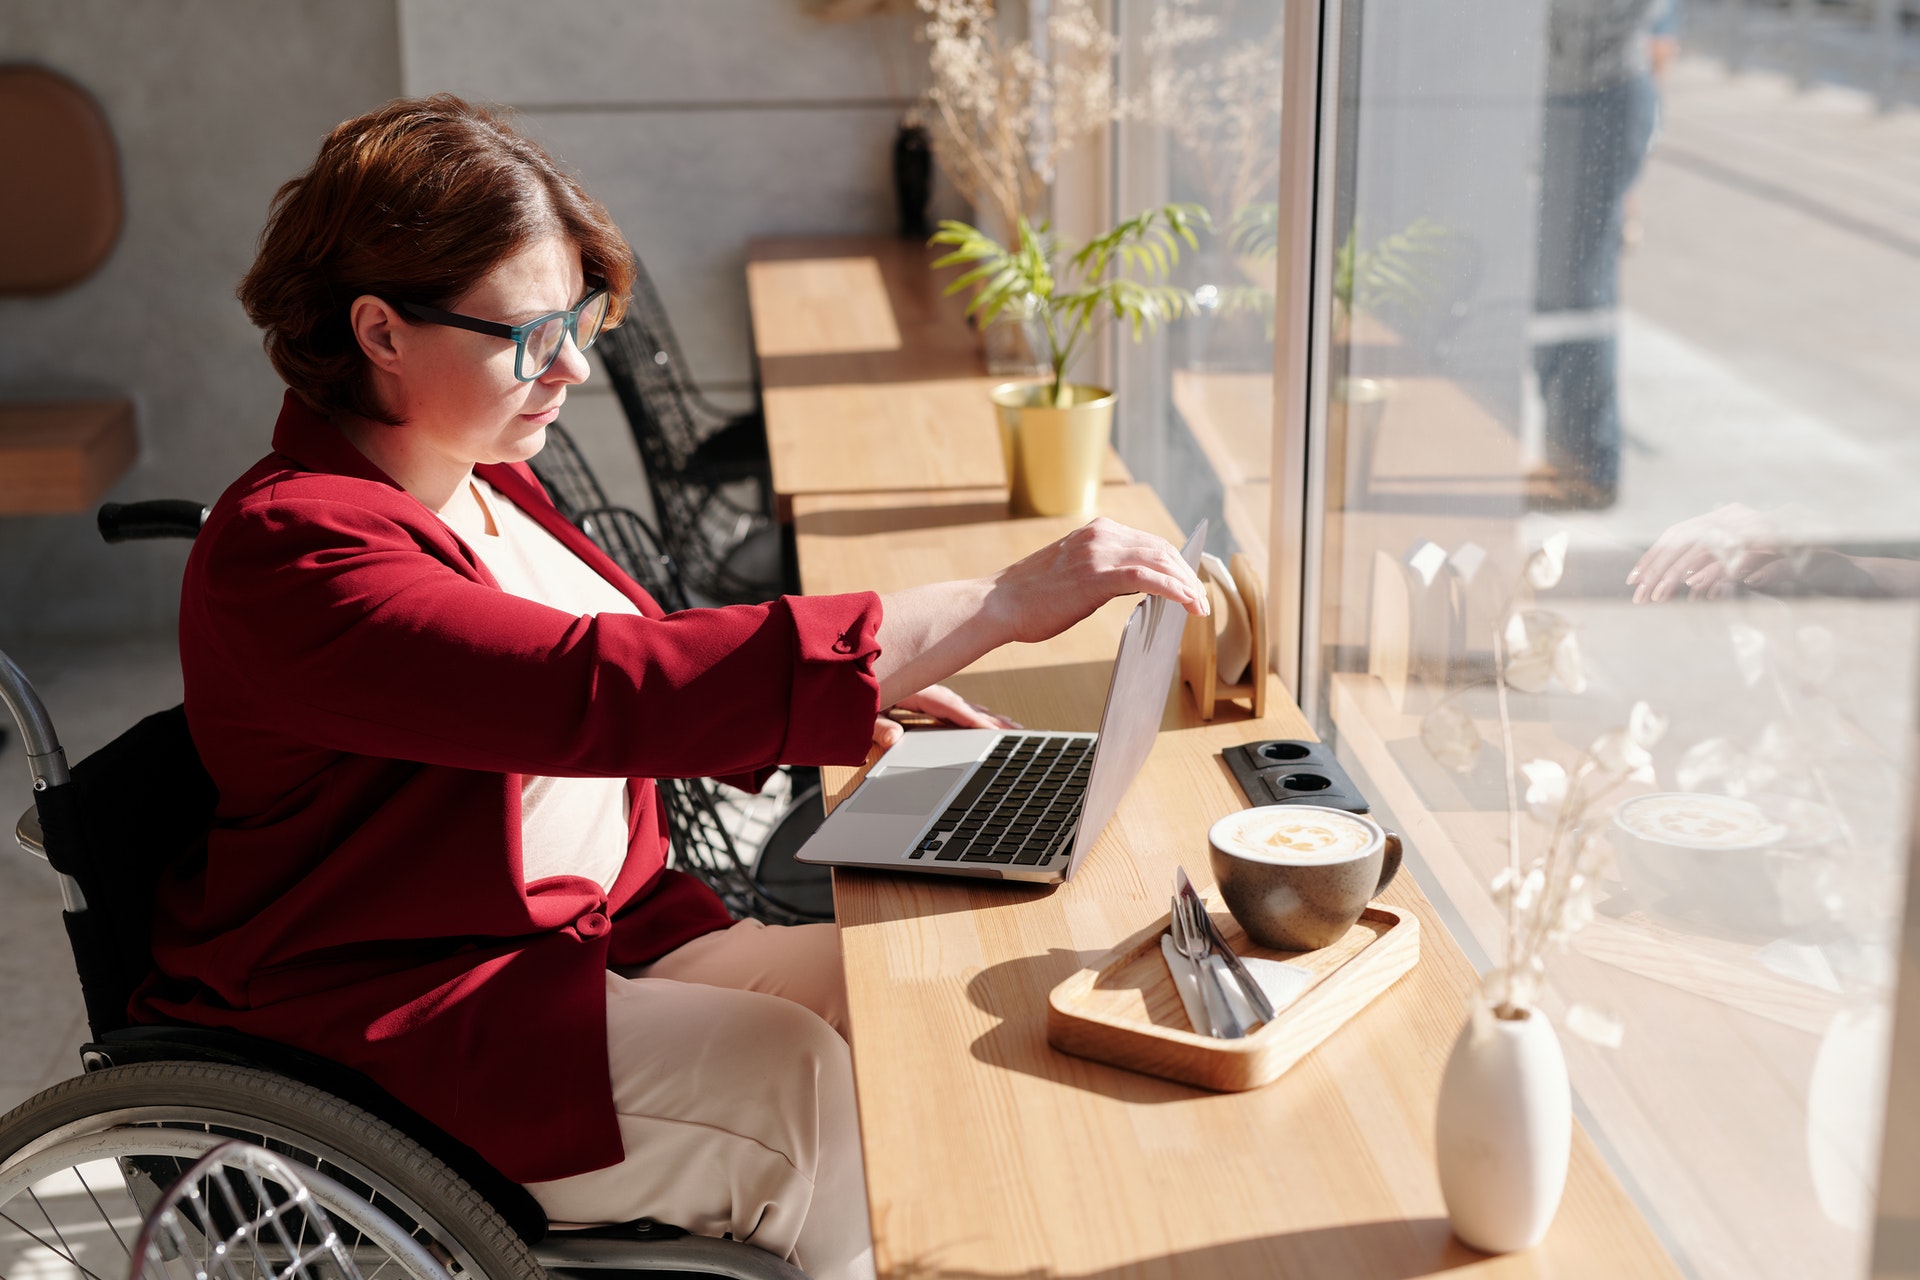 Frau mit Behinderung, Rollstuhl, Frau auf dem Rollstuhl, Frau am Arbeiten, Freibeträge für Menschen mit Behinderung